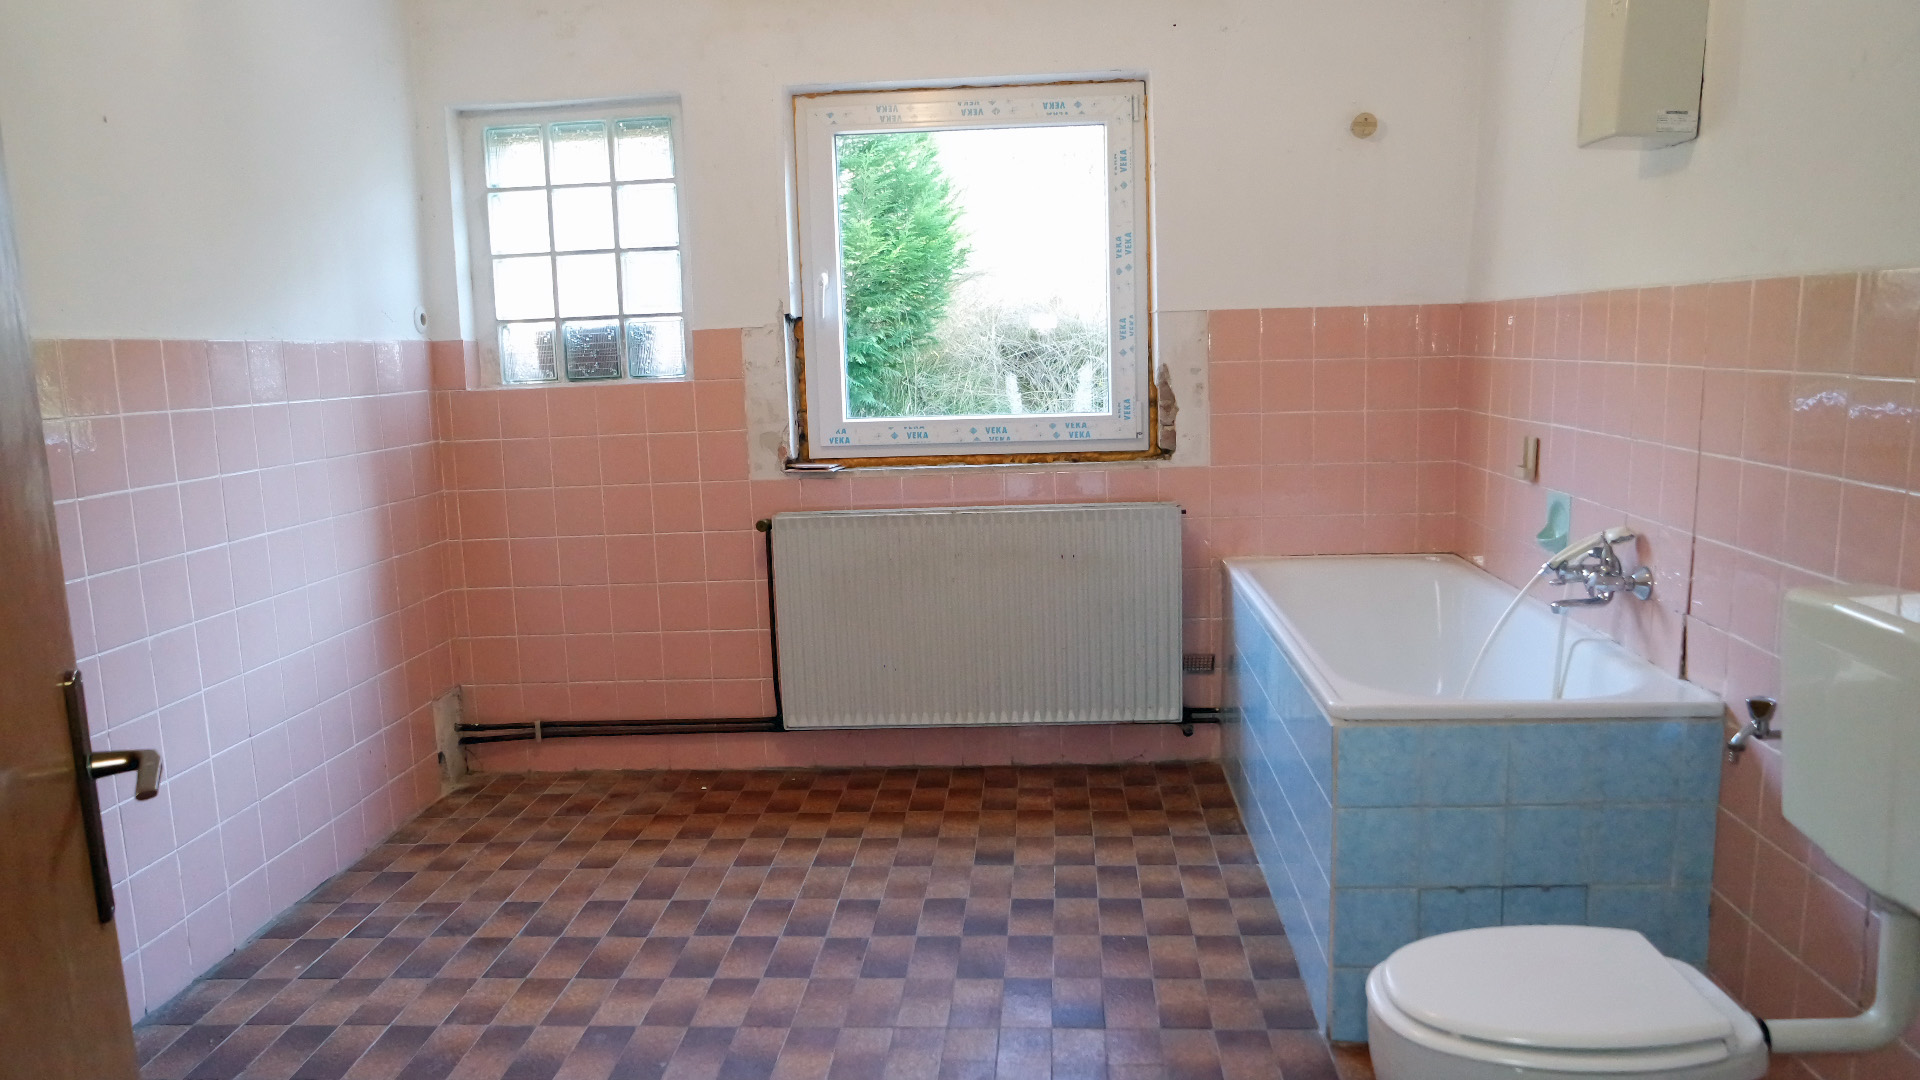 Bergneustadt-Baldenberg: Achtung Handwerker!, auf jeder Etage gibt es ein großes Bad. Hier Erdgeschoss...